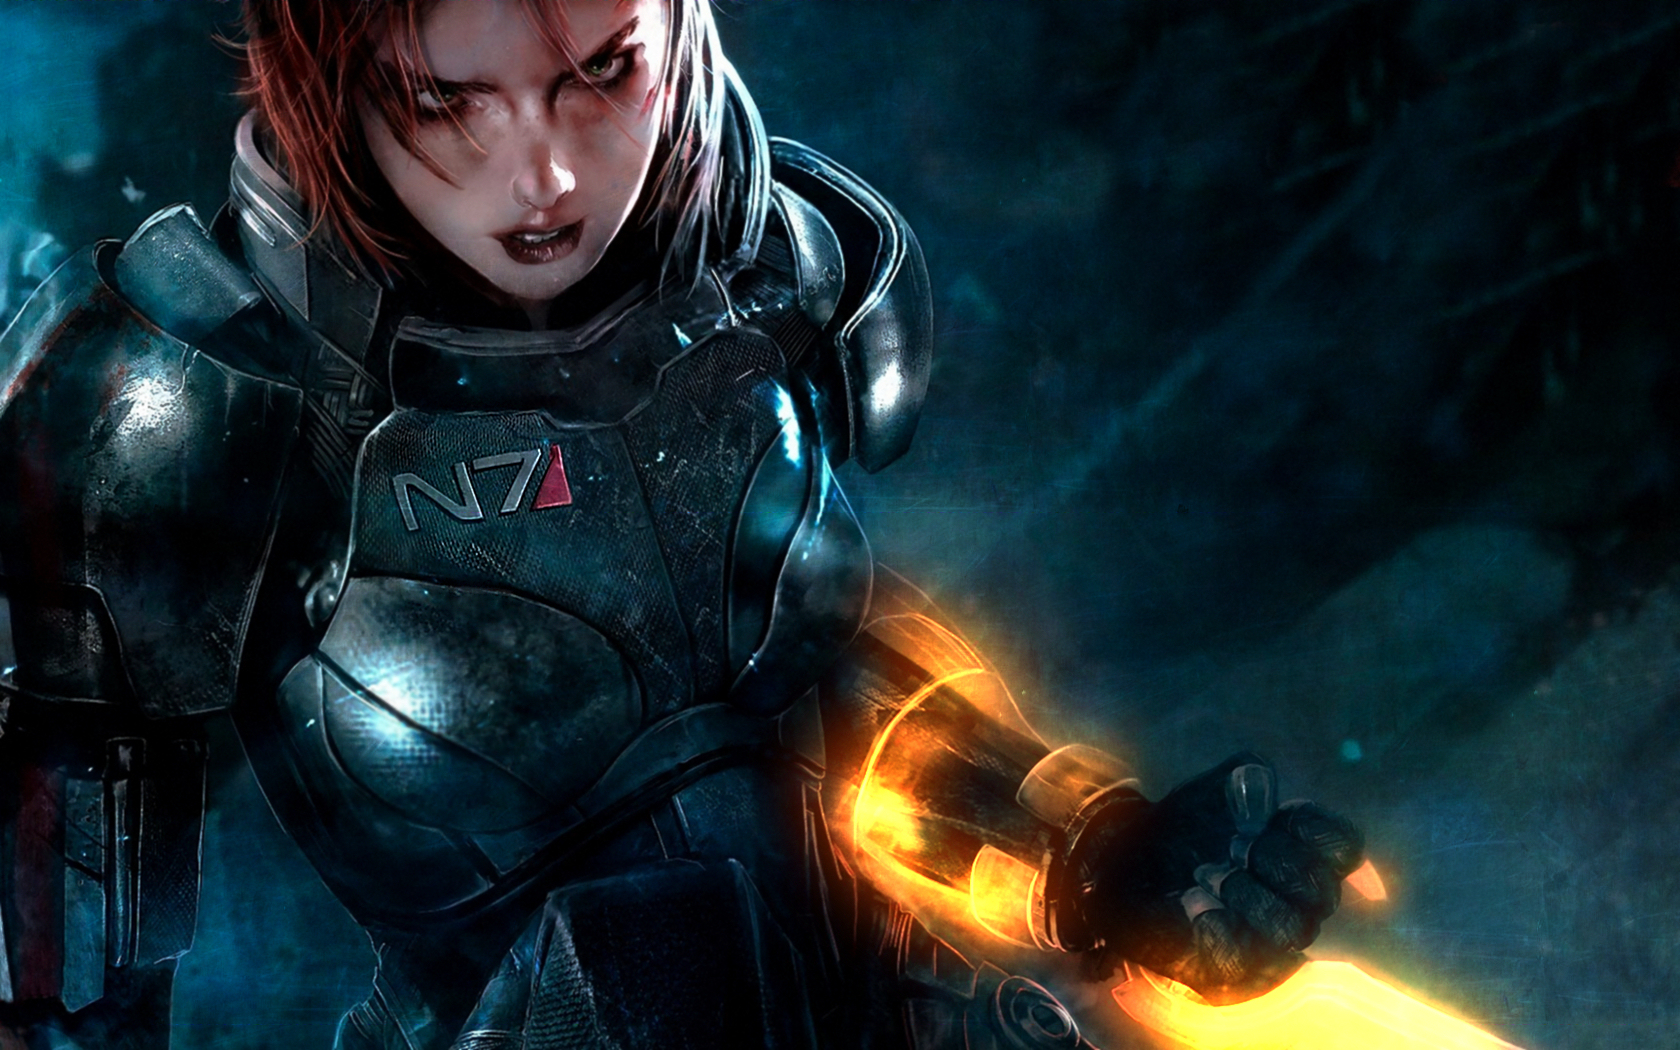 Descarga gratuita de fondo de pantalla para móvil de Comandante Shepard, Mass Effect, Videojuego.